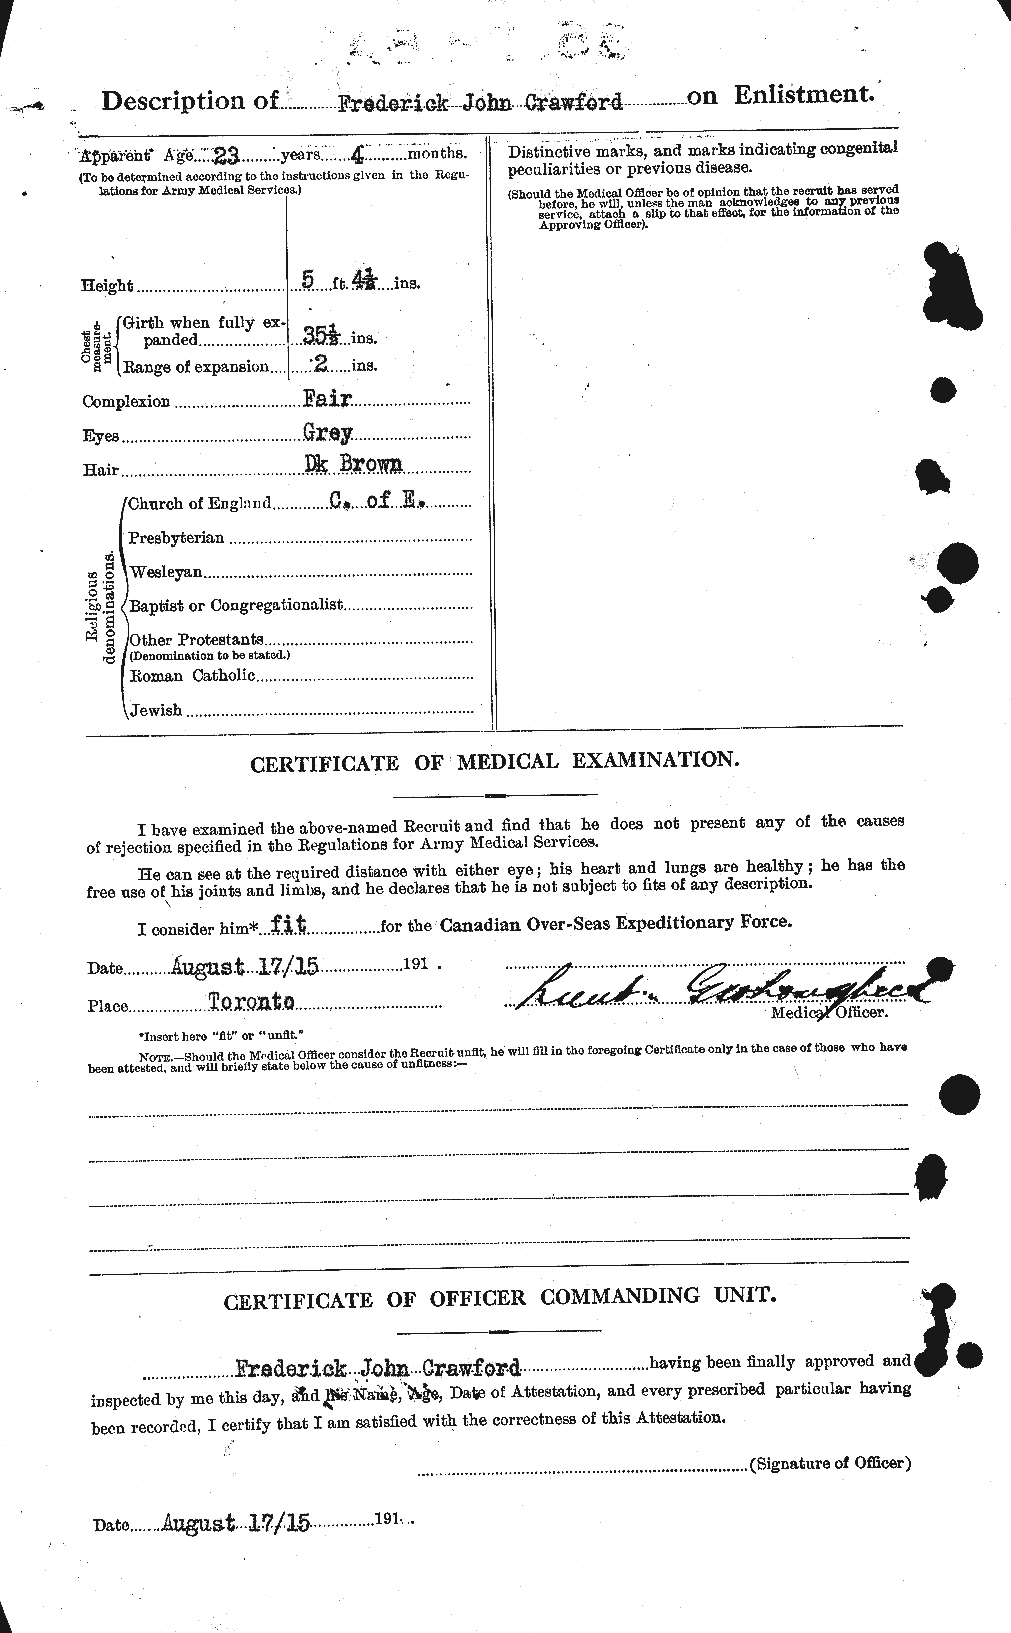 Dossiers du Personnel de la Première Guerre mondiale - CEC 060723b